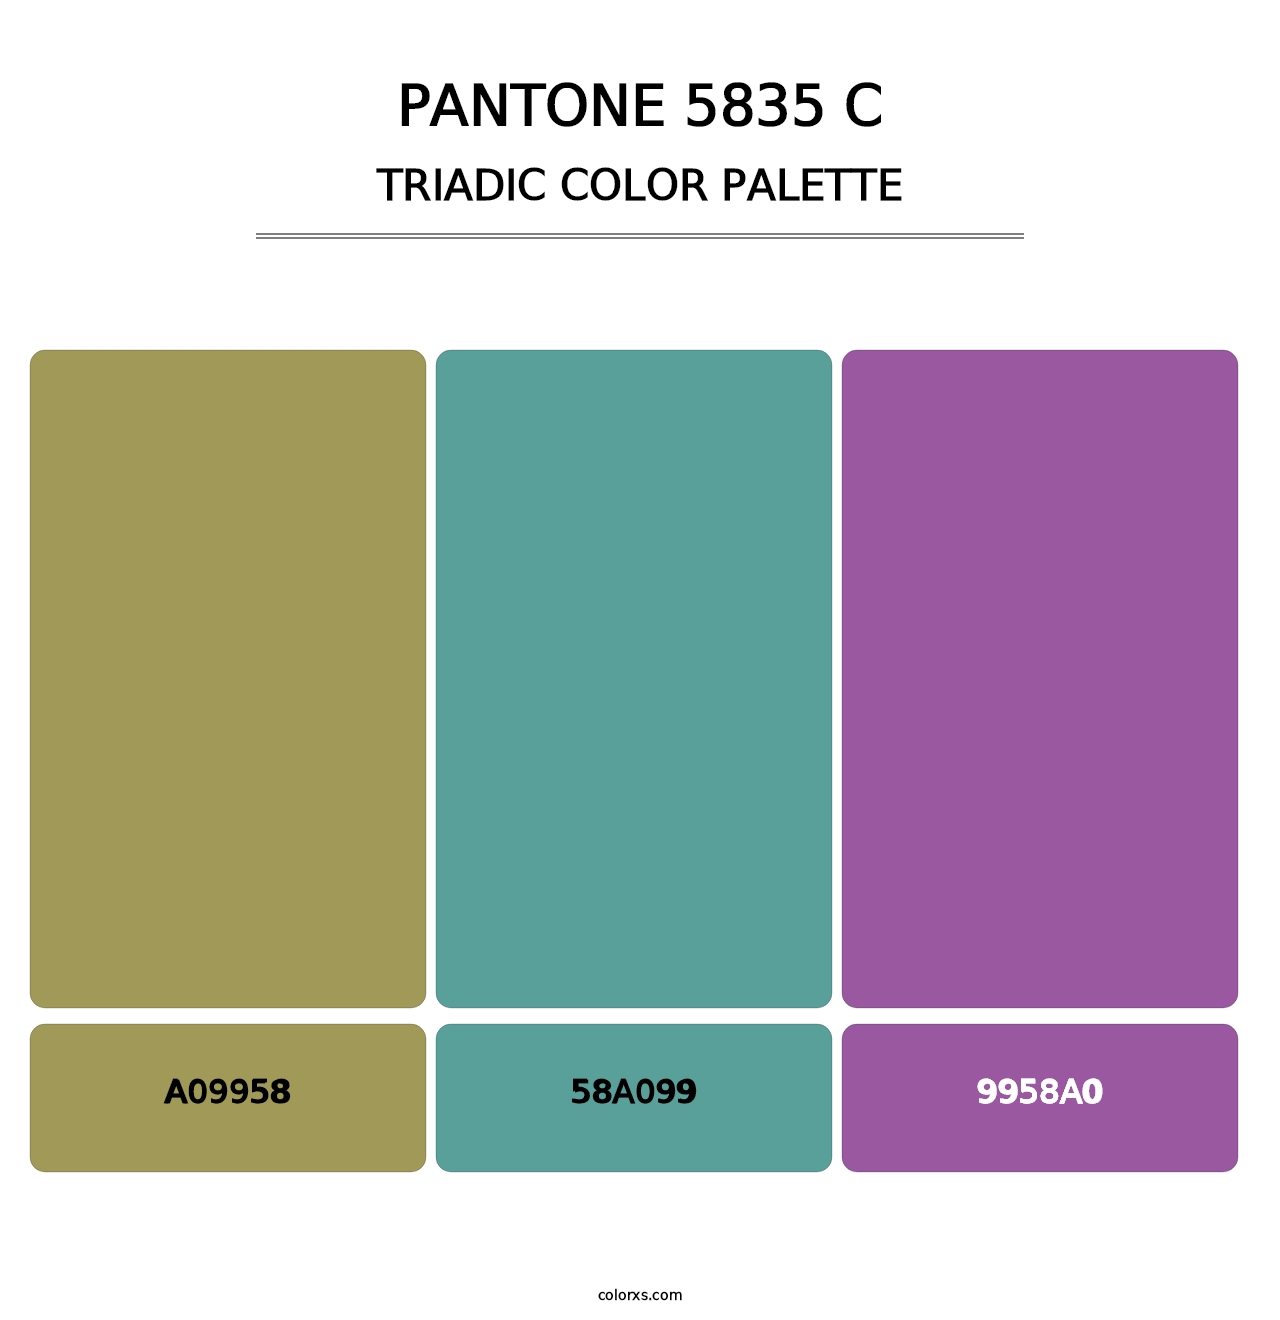 PANTONE 5835 C - Triadic Color Palette